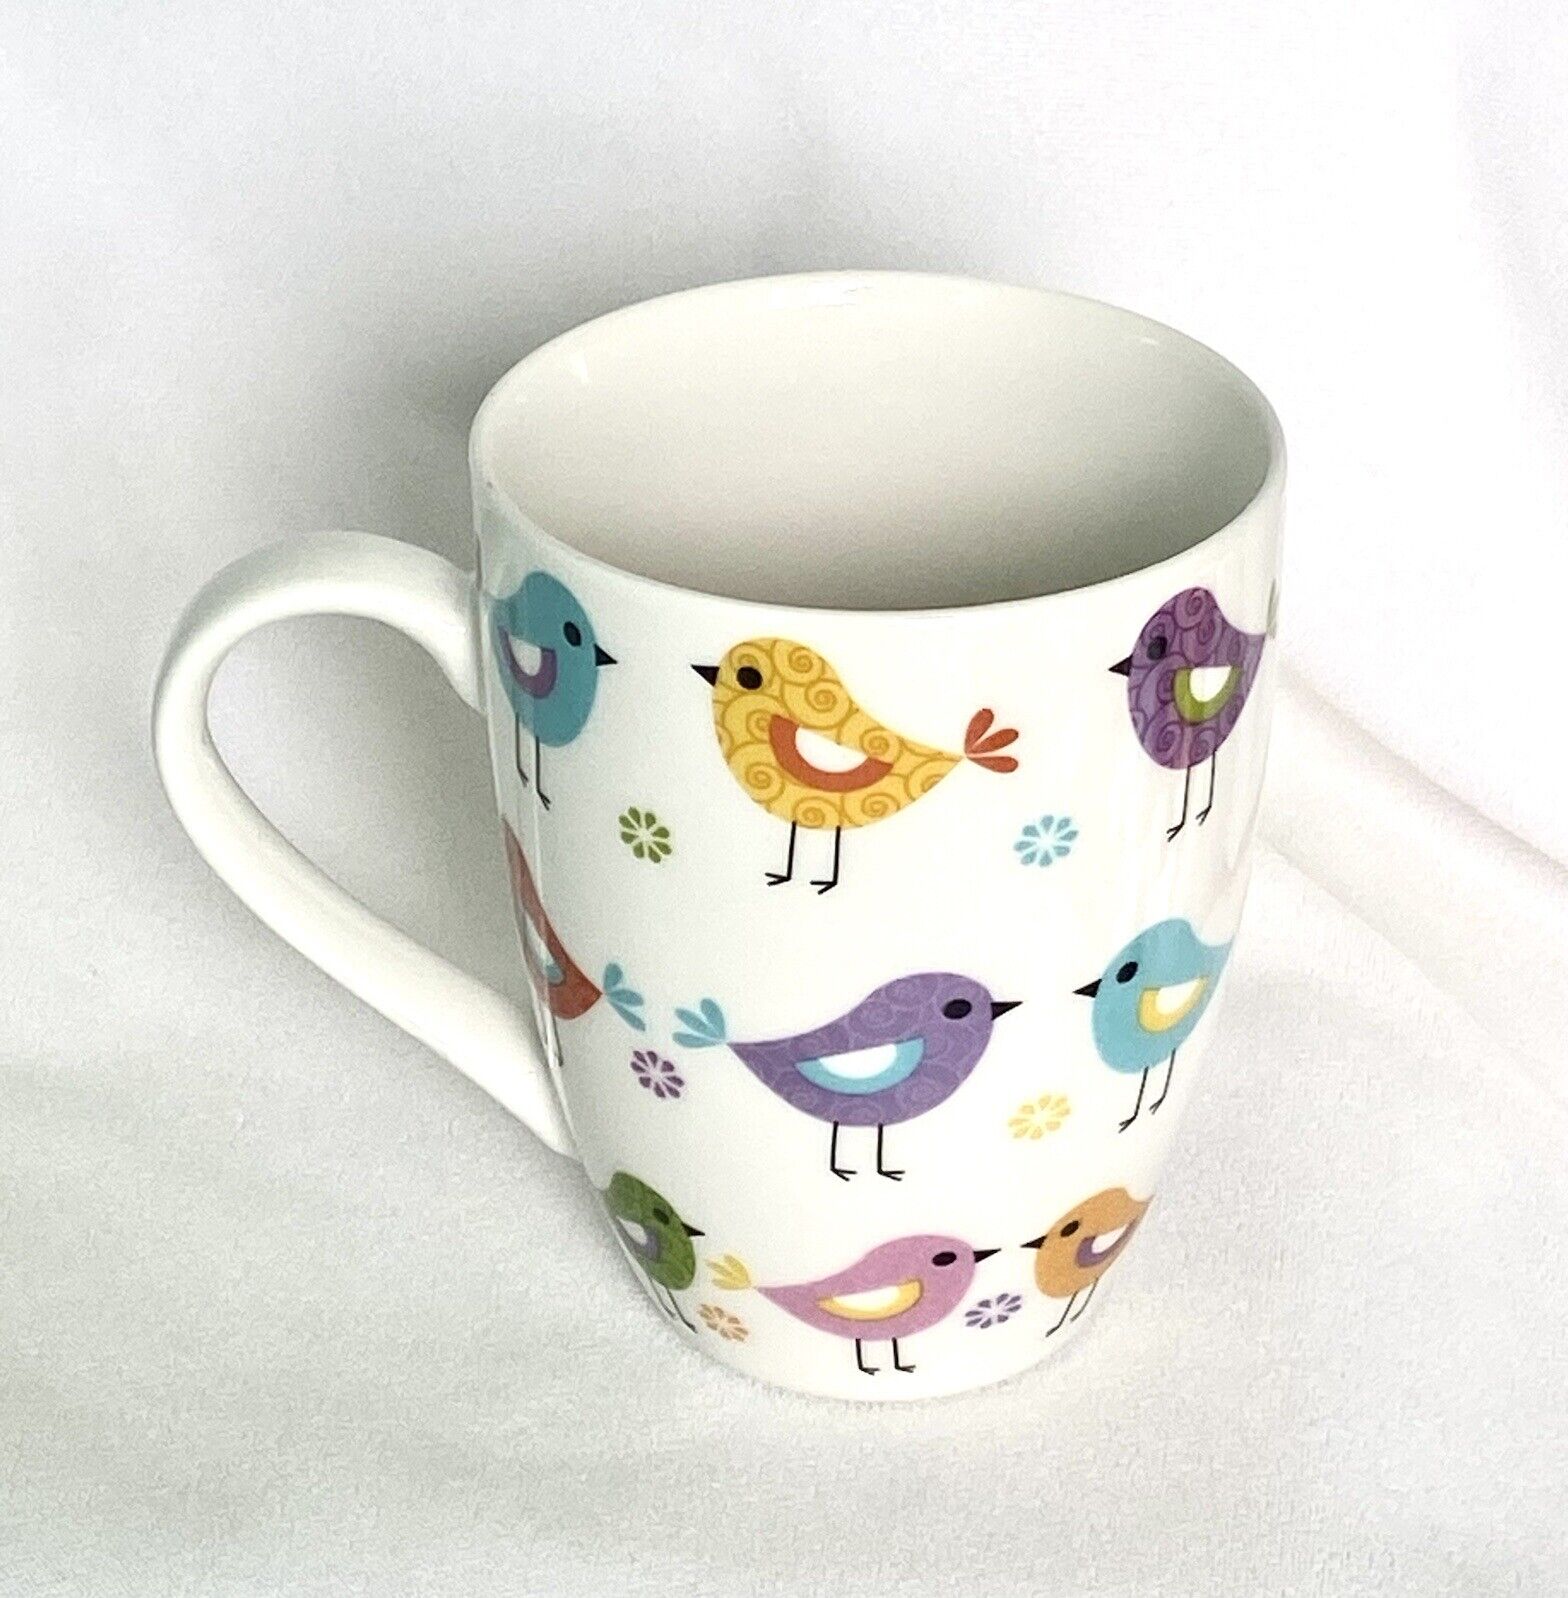 Divinity Boutique - Inspirational Ceramic Mug w/Birds, Psalm 103:5